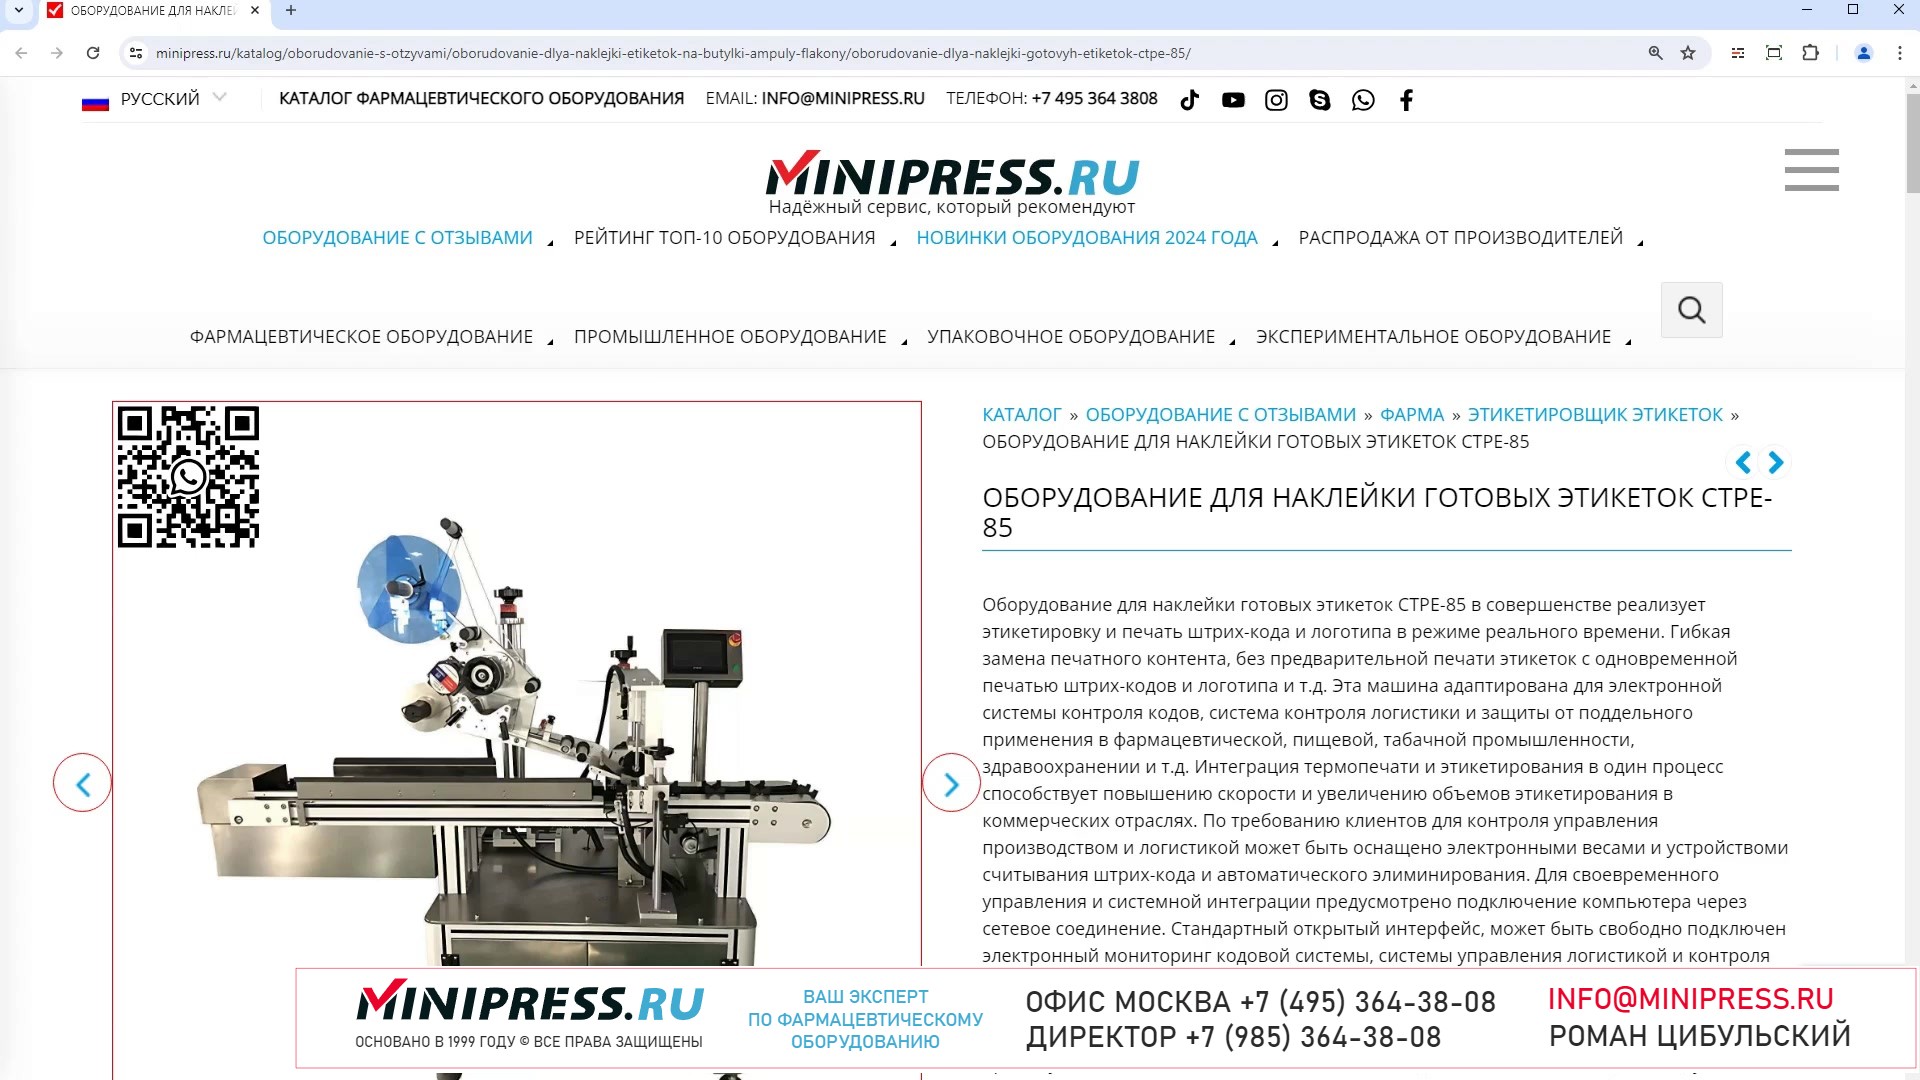 Minipress.ru Оборудование для наклейки готовых этикеток CTPE-85